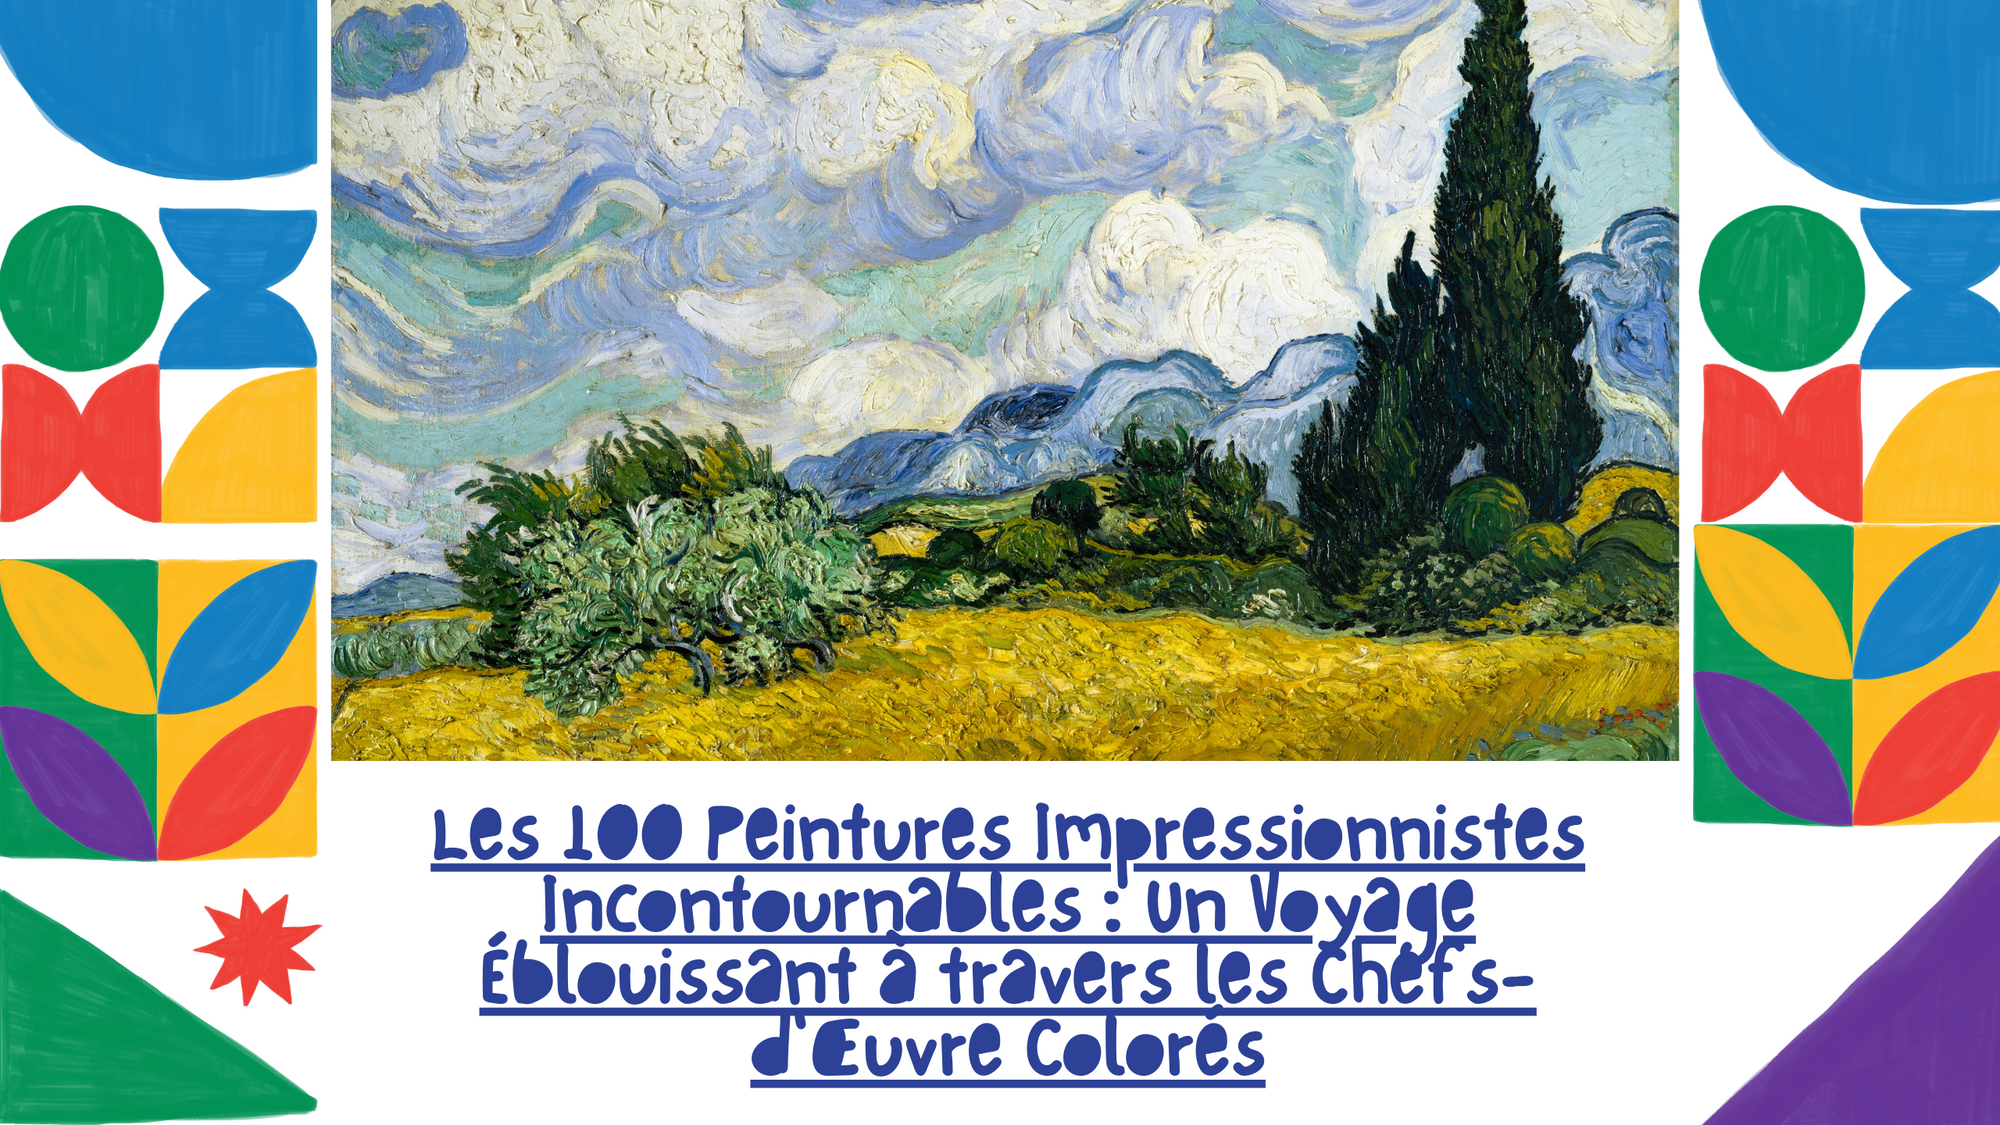 Les 100 Peintures Impressionnistes Incontournables : Un Voyage Éblouissant à travers les Chefs-d'Œuvre Colorés